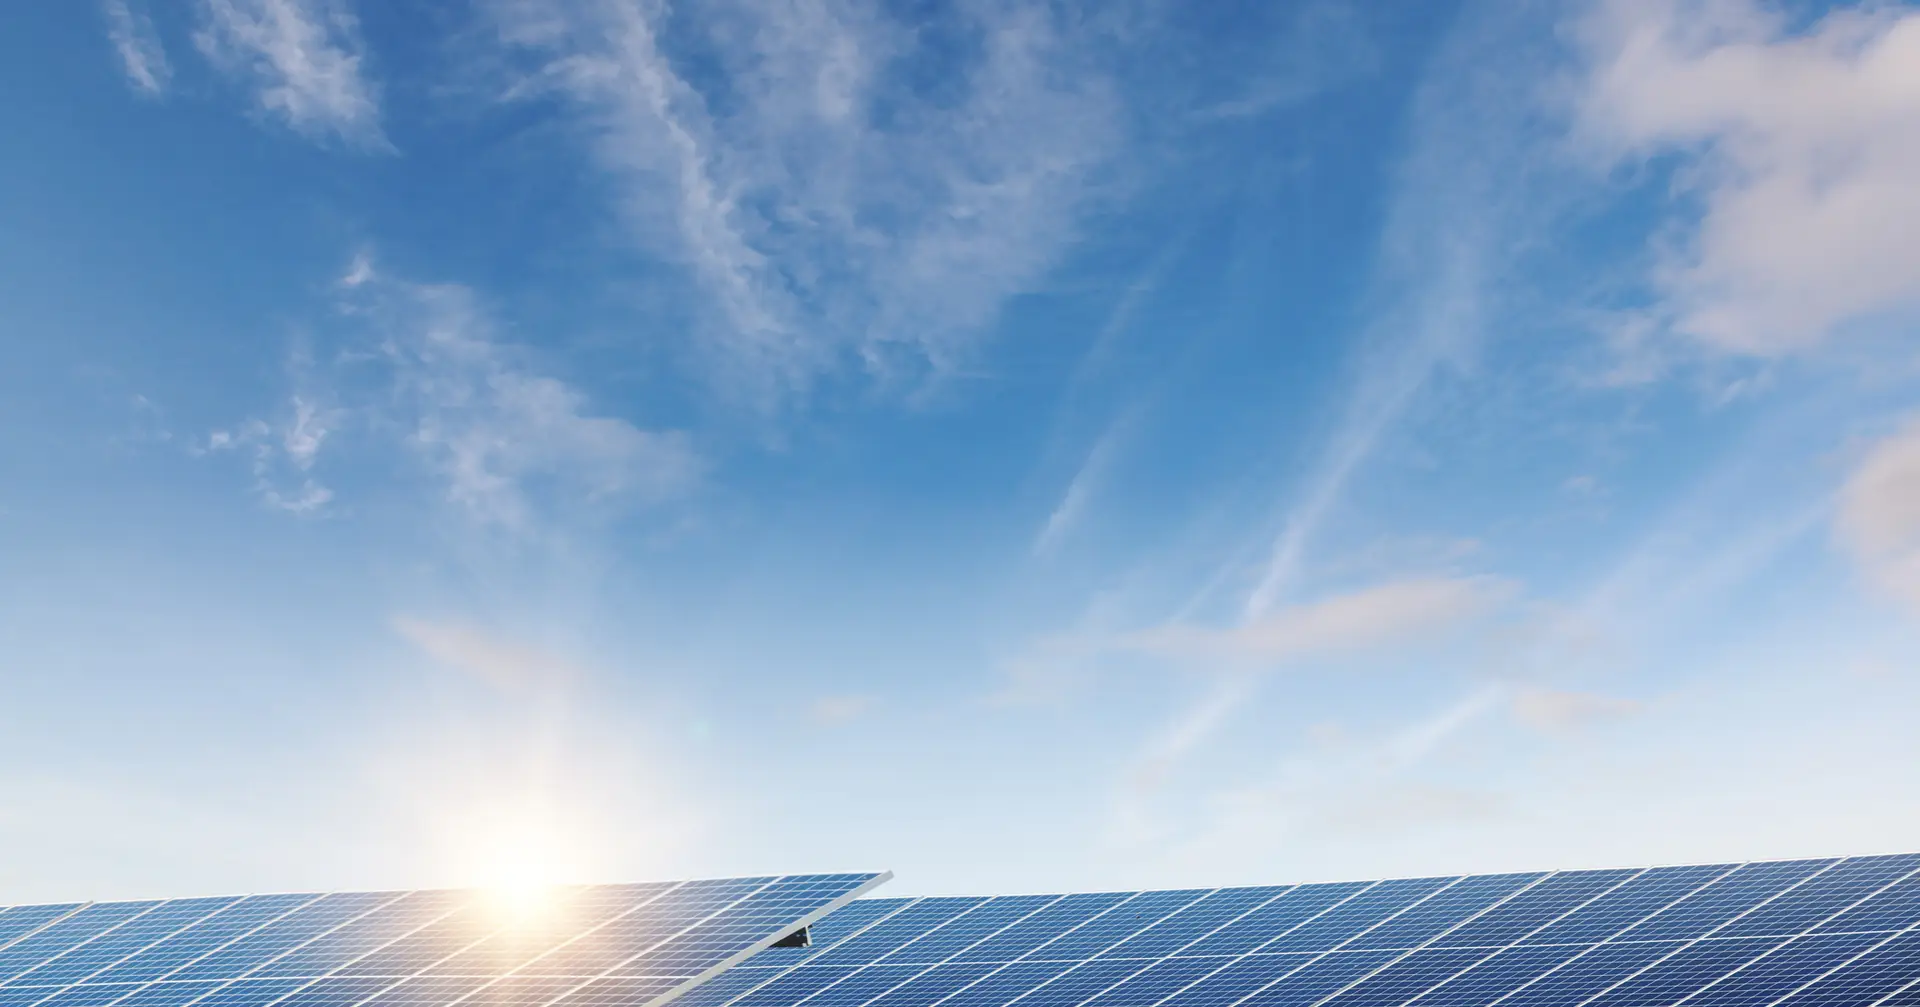 Die deutsche RWE hat mit dem Bau eines 44-MW-Solarkraftwerks in Sens begonnen